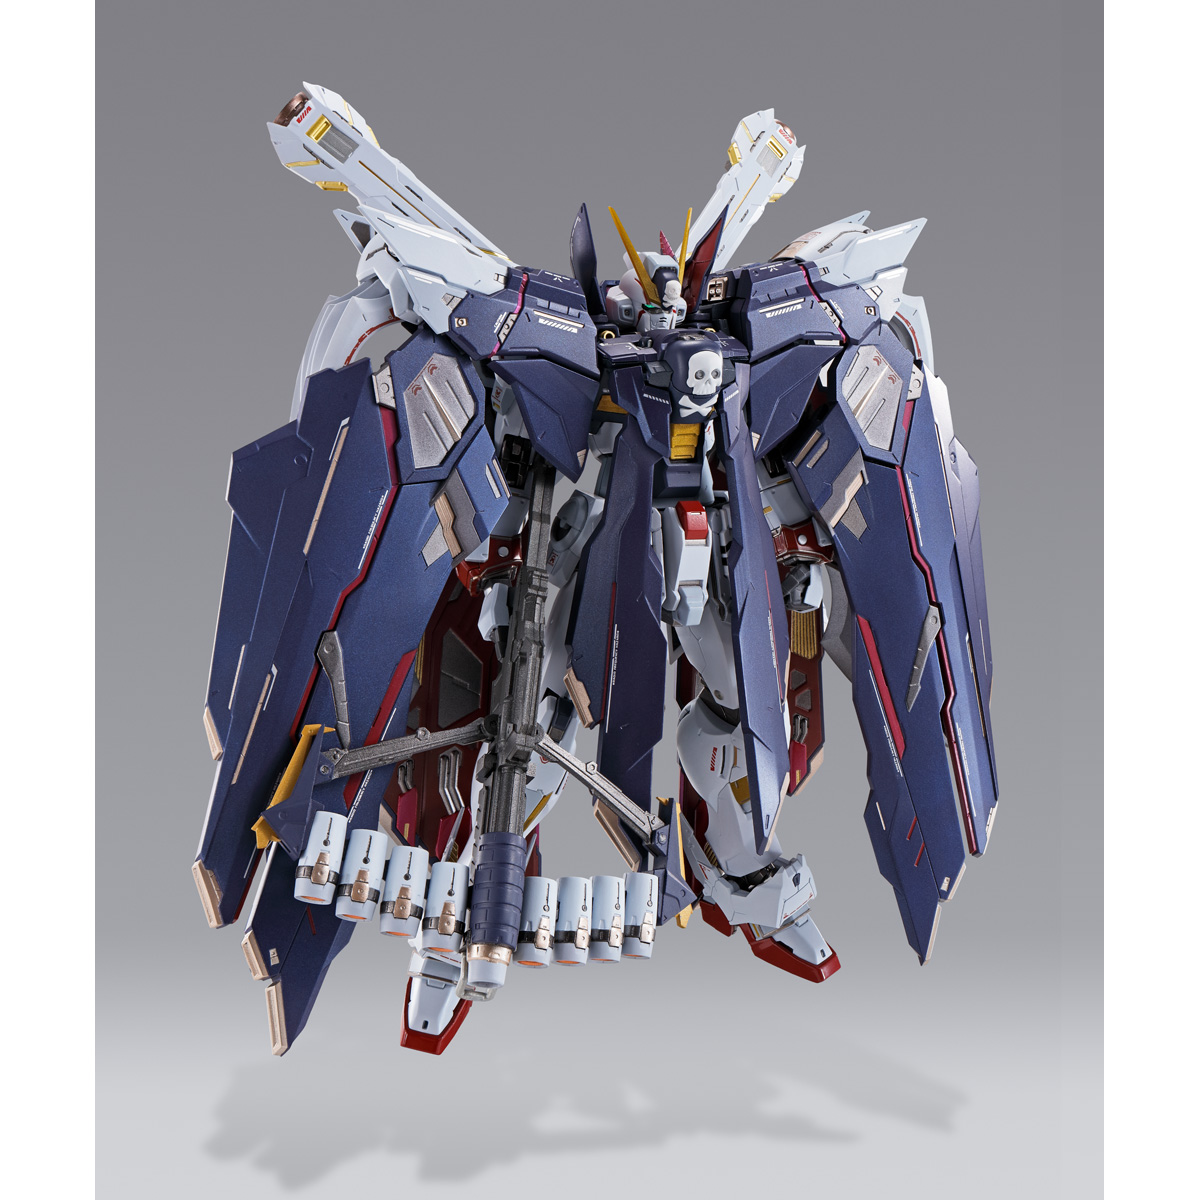 Details about   Bandai Metal Build Crossbone Gundam X1 Mobile Suit 